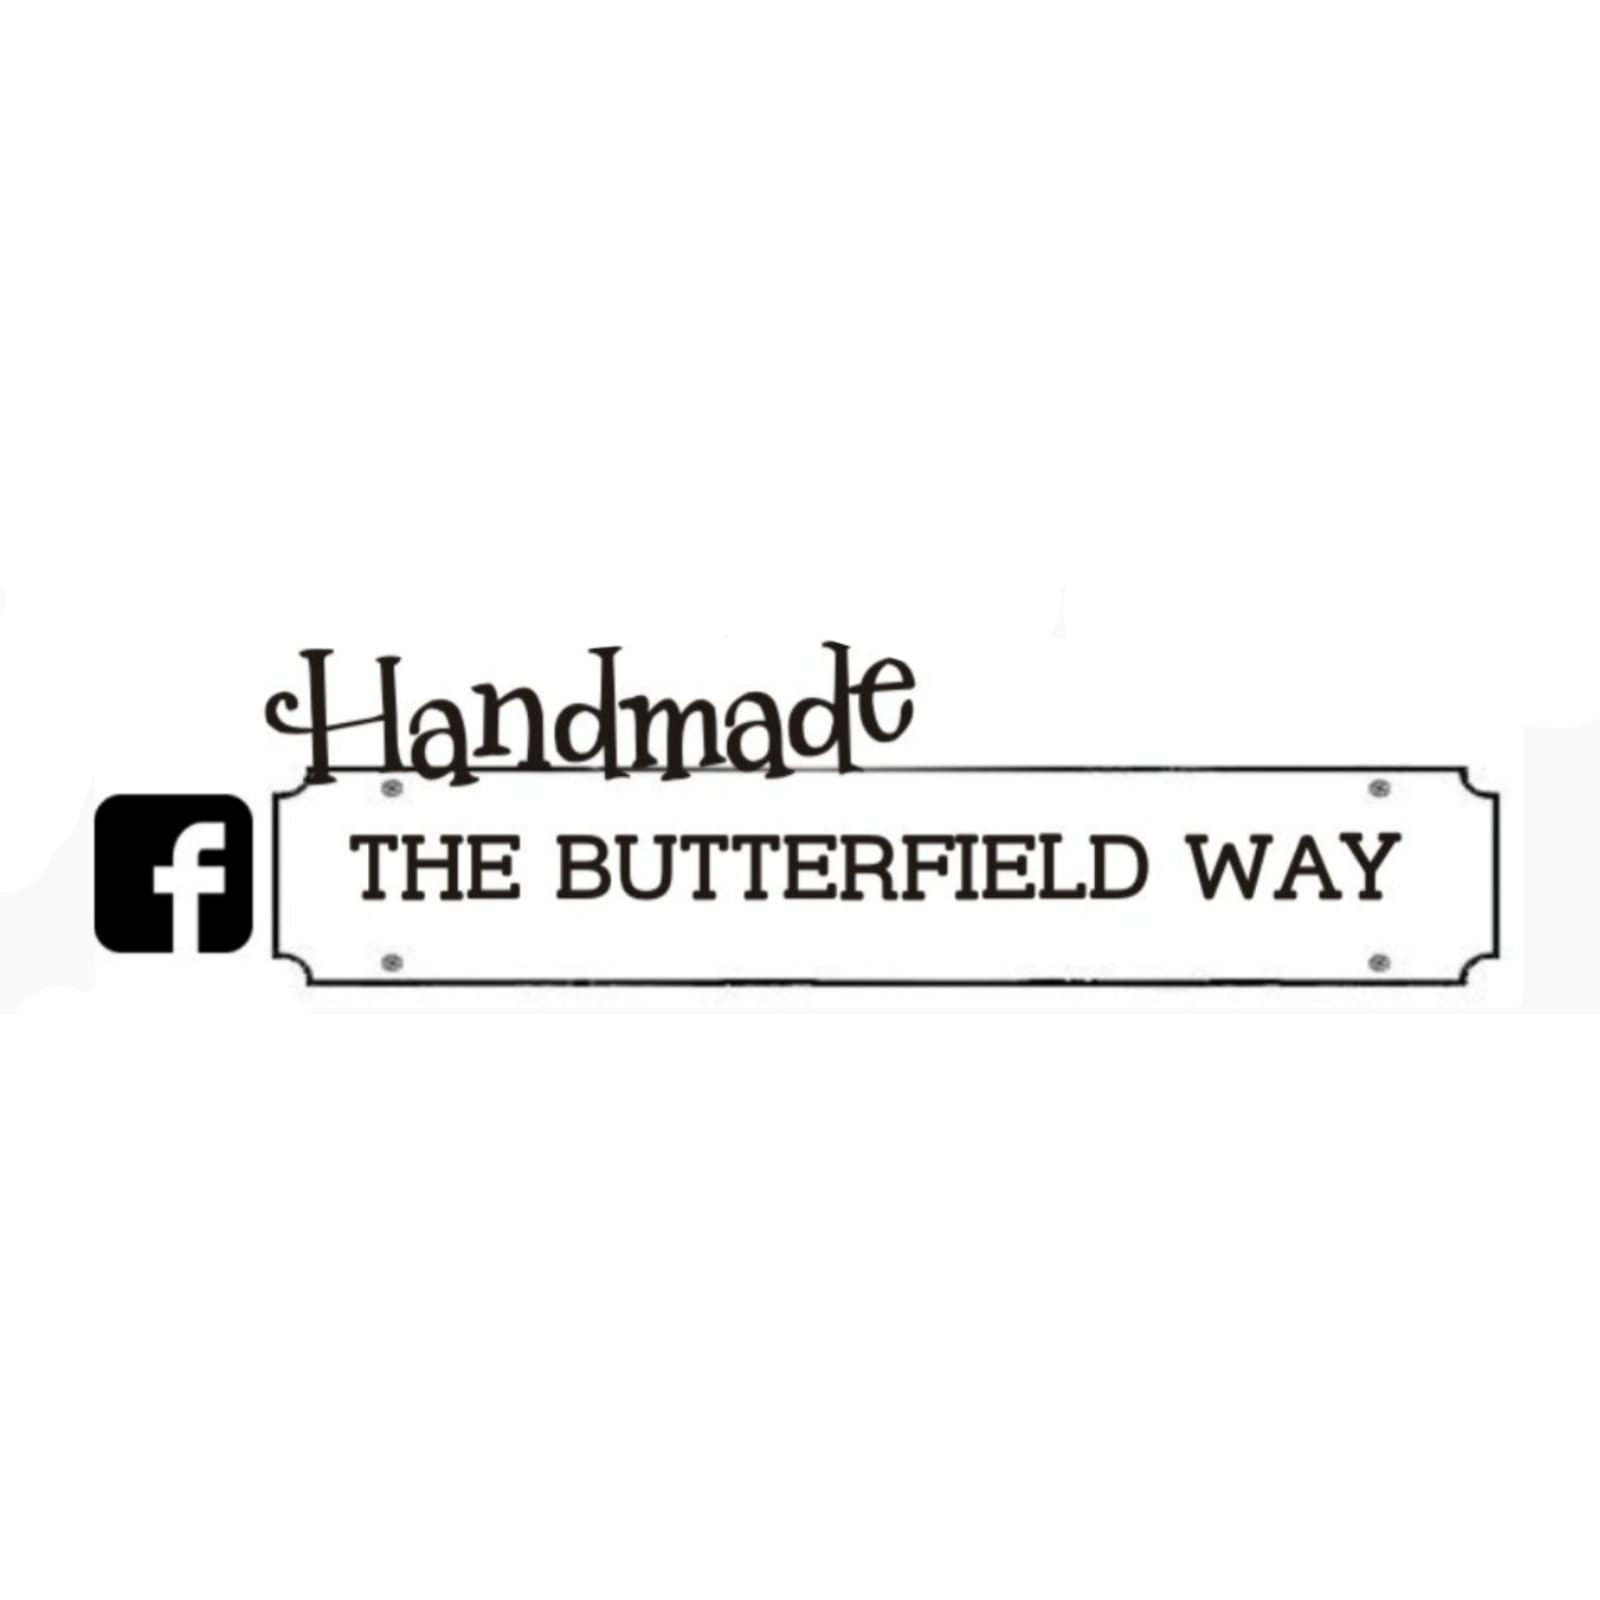 Handmade The Butterfield Way